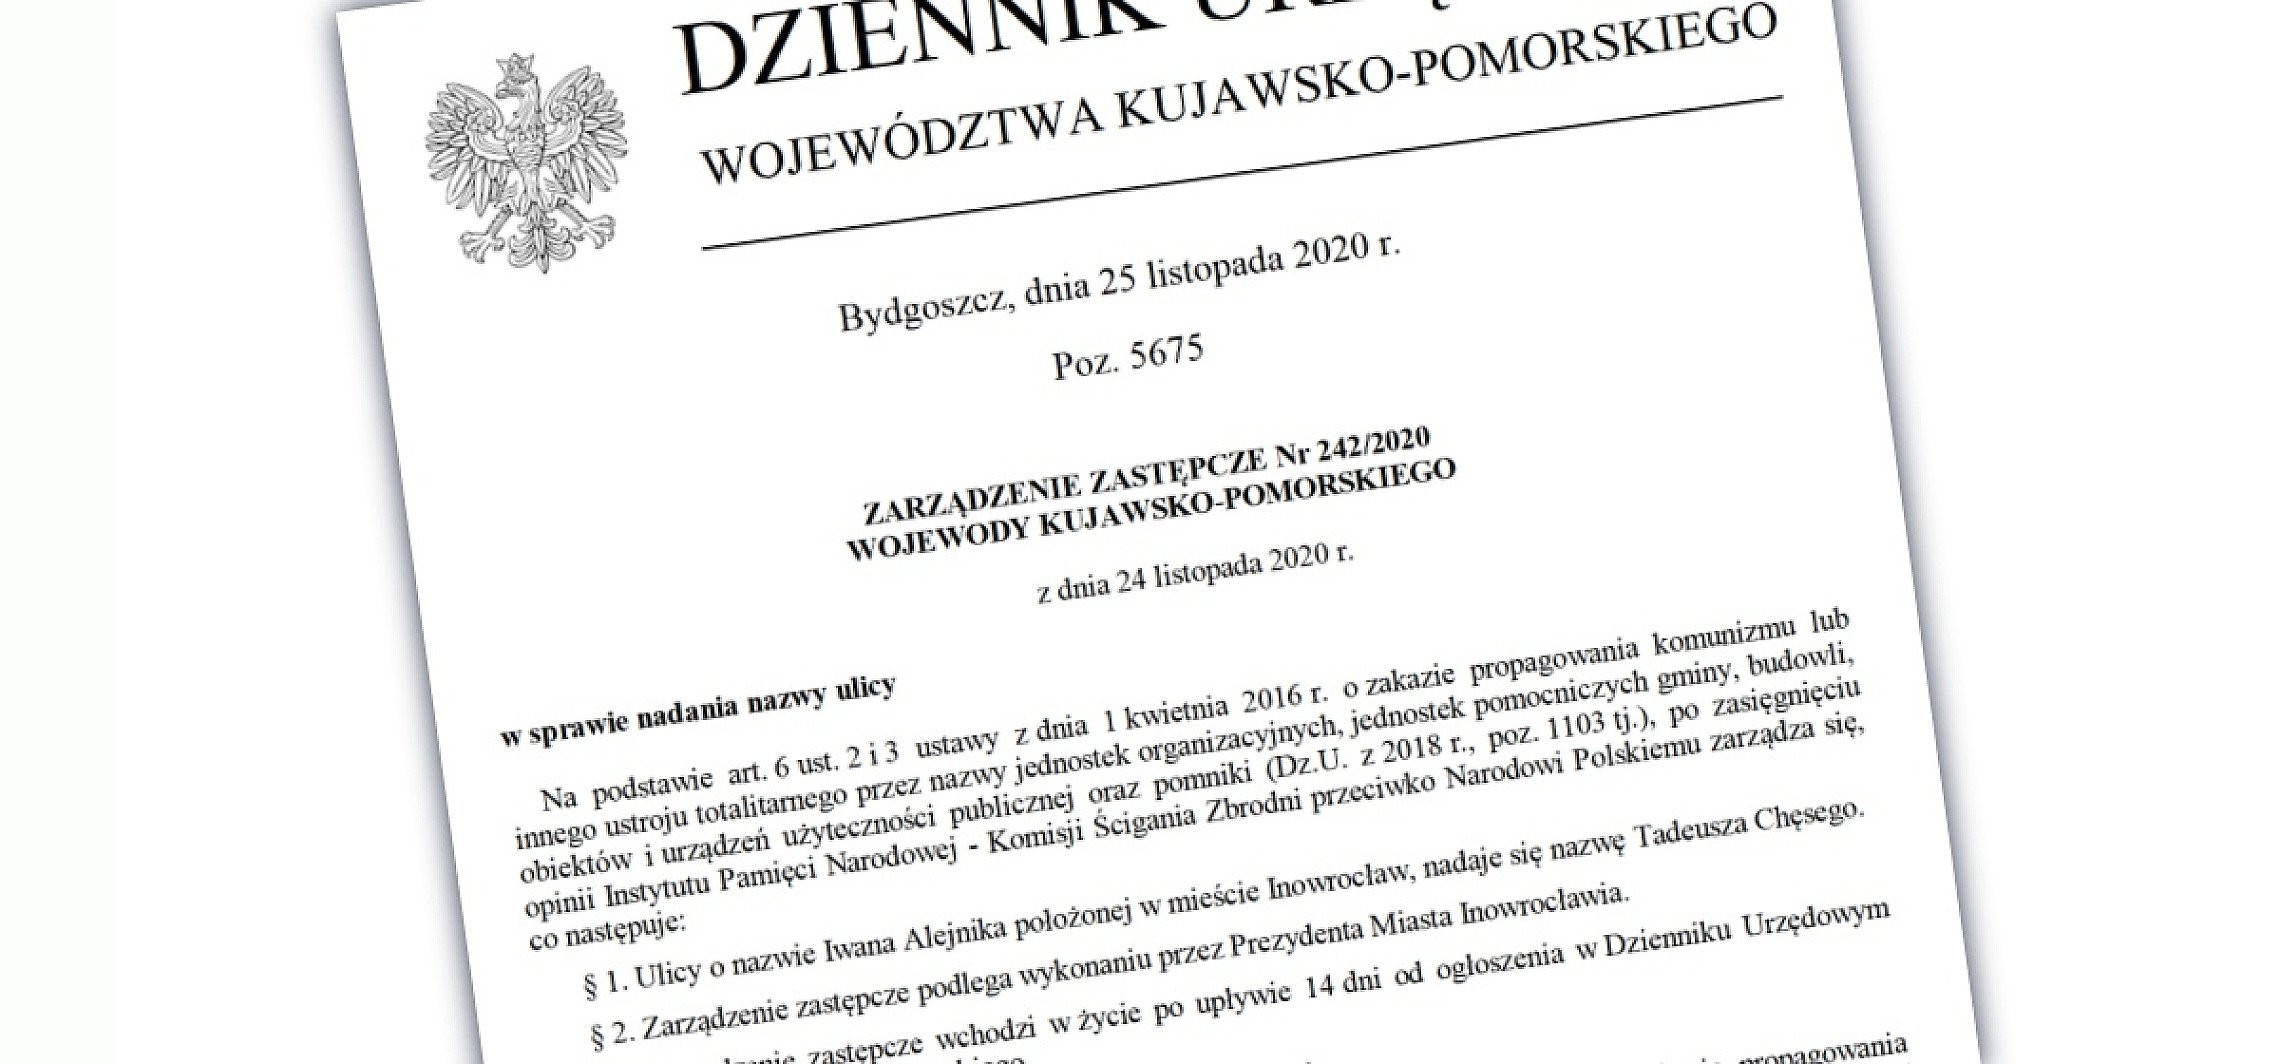 Inowrocław - Wojewoda wydał zarządzenie ws. ul. Alejnika